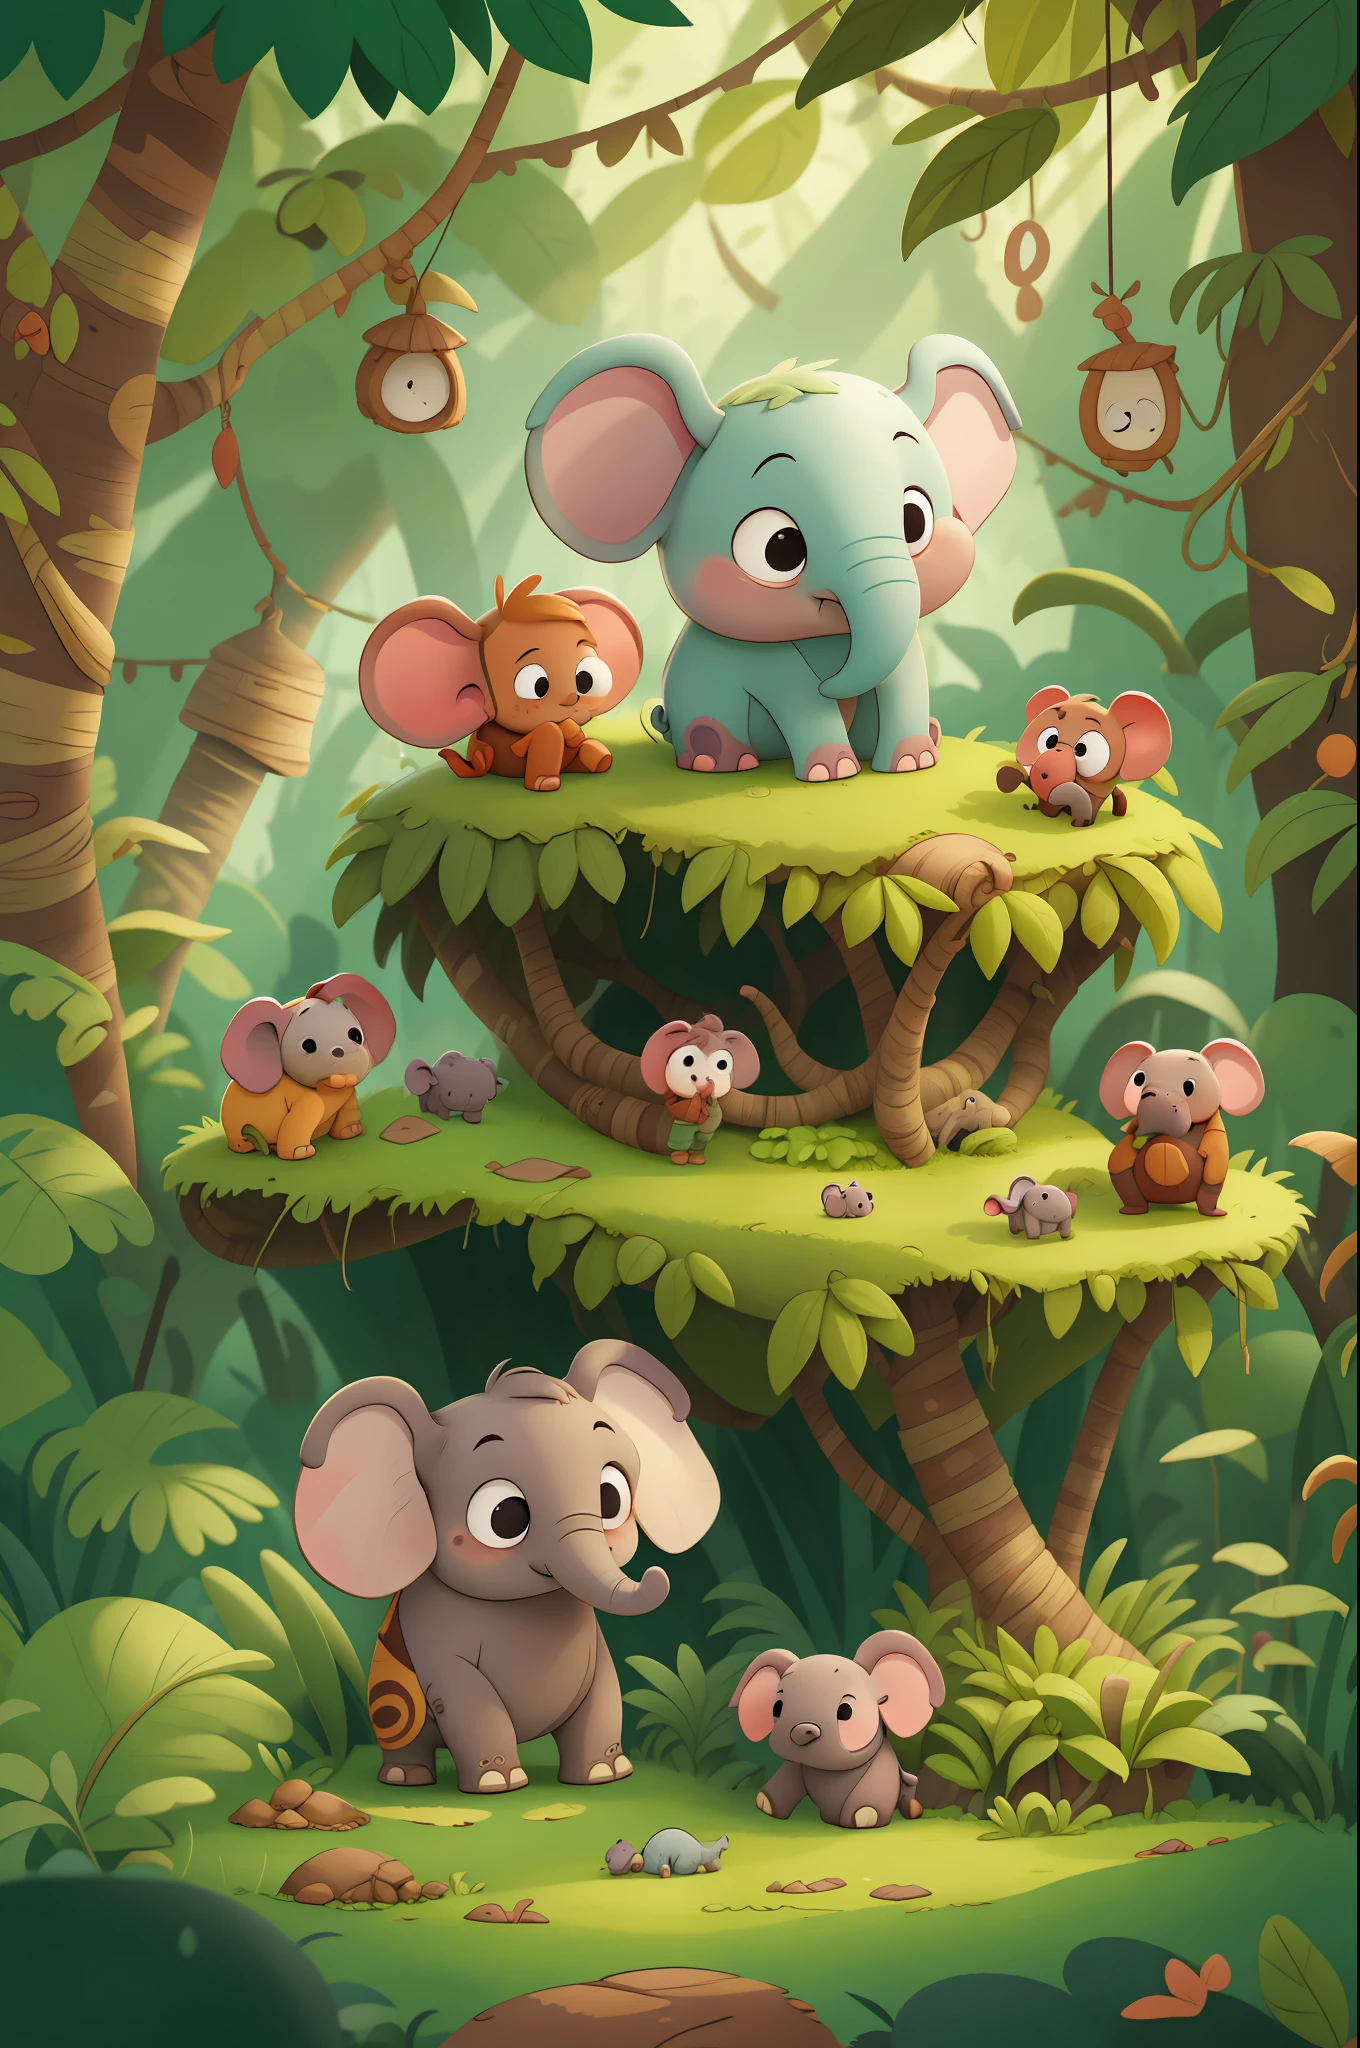 从前，有一头小象，名叫道格，他和家人住在丛林里. 道格非常好奇，喜欢探索周围的世界. 儿童图书, 动画风格.